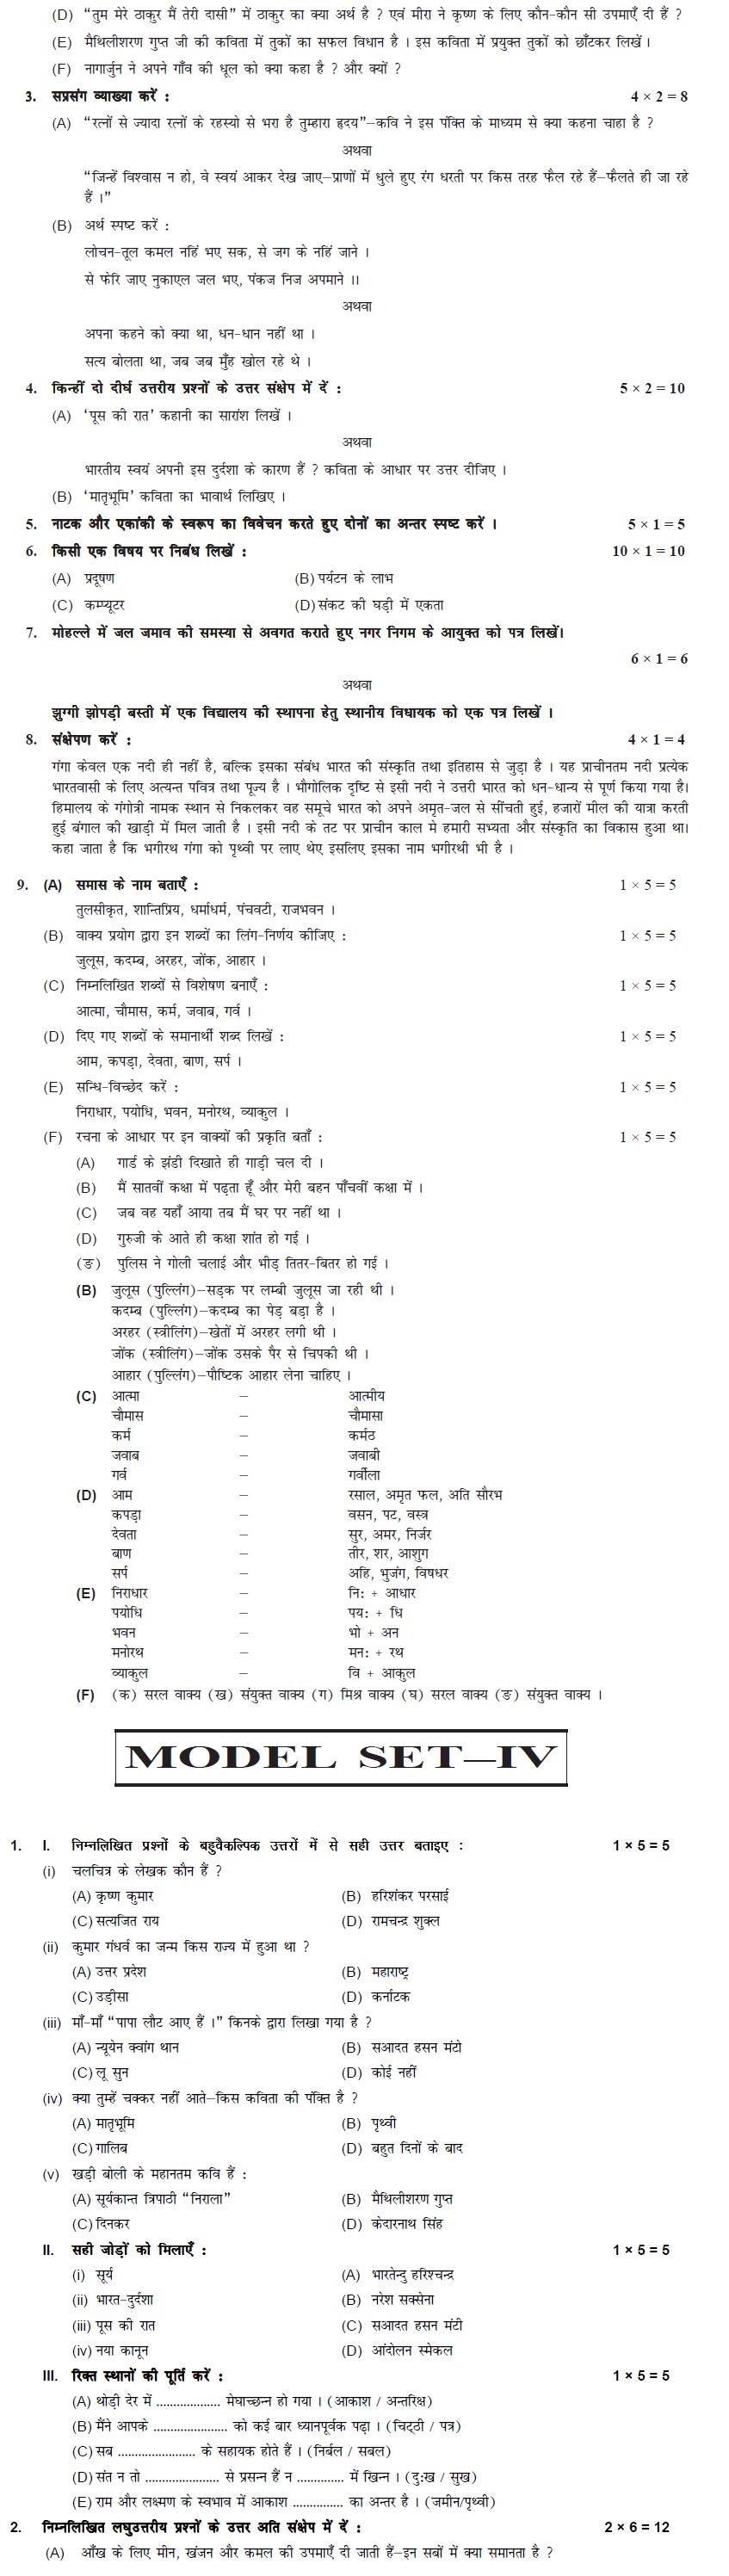 Bihar Board Class XI Humanities Model Question Papers - Hindi